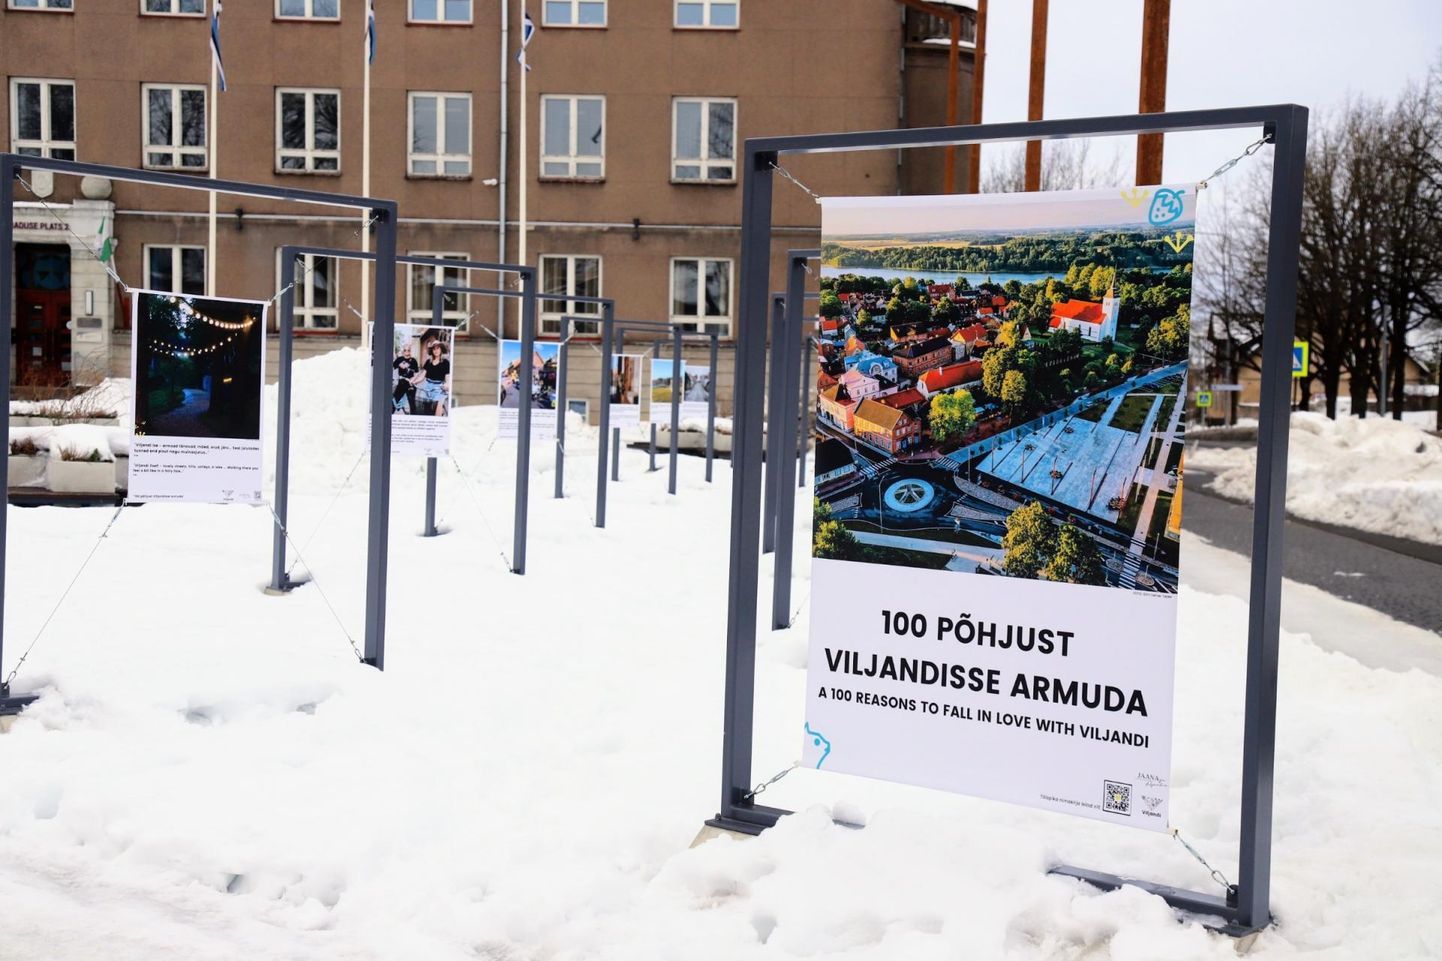 Tänasest aprillikuuni saab Viljandi Vabaduse platsil näha näitust "100 põhjust Viljandisse armuda", mis on kokku pandud inimeste mõtetest üle Eesti.